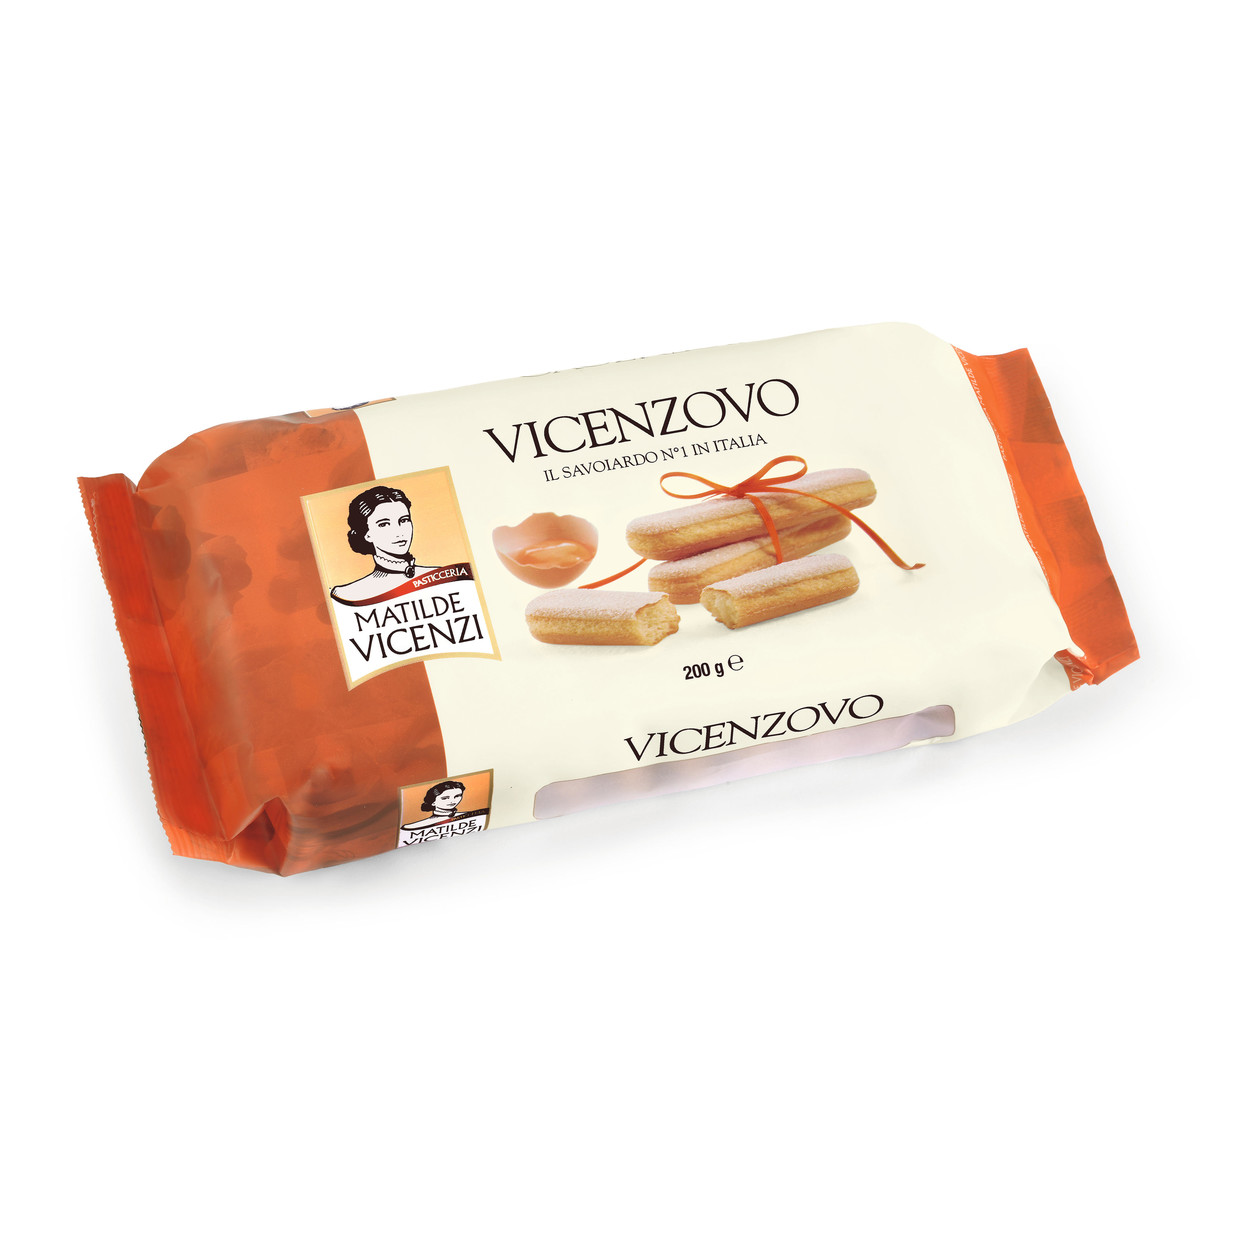 Палочки Vicenzi Vicenzovo с сахарной помадкой, 400 г пончики matilde vicenzi воздушные чамбеллине слоеные 85 г